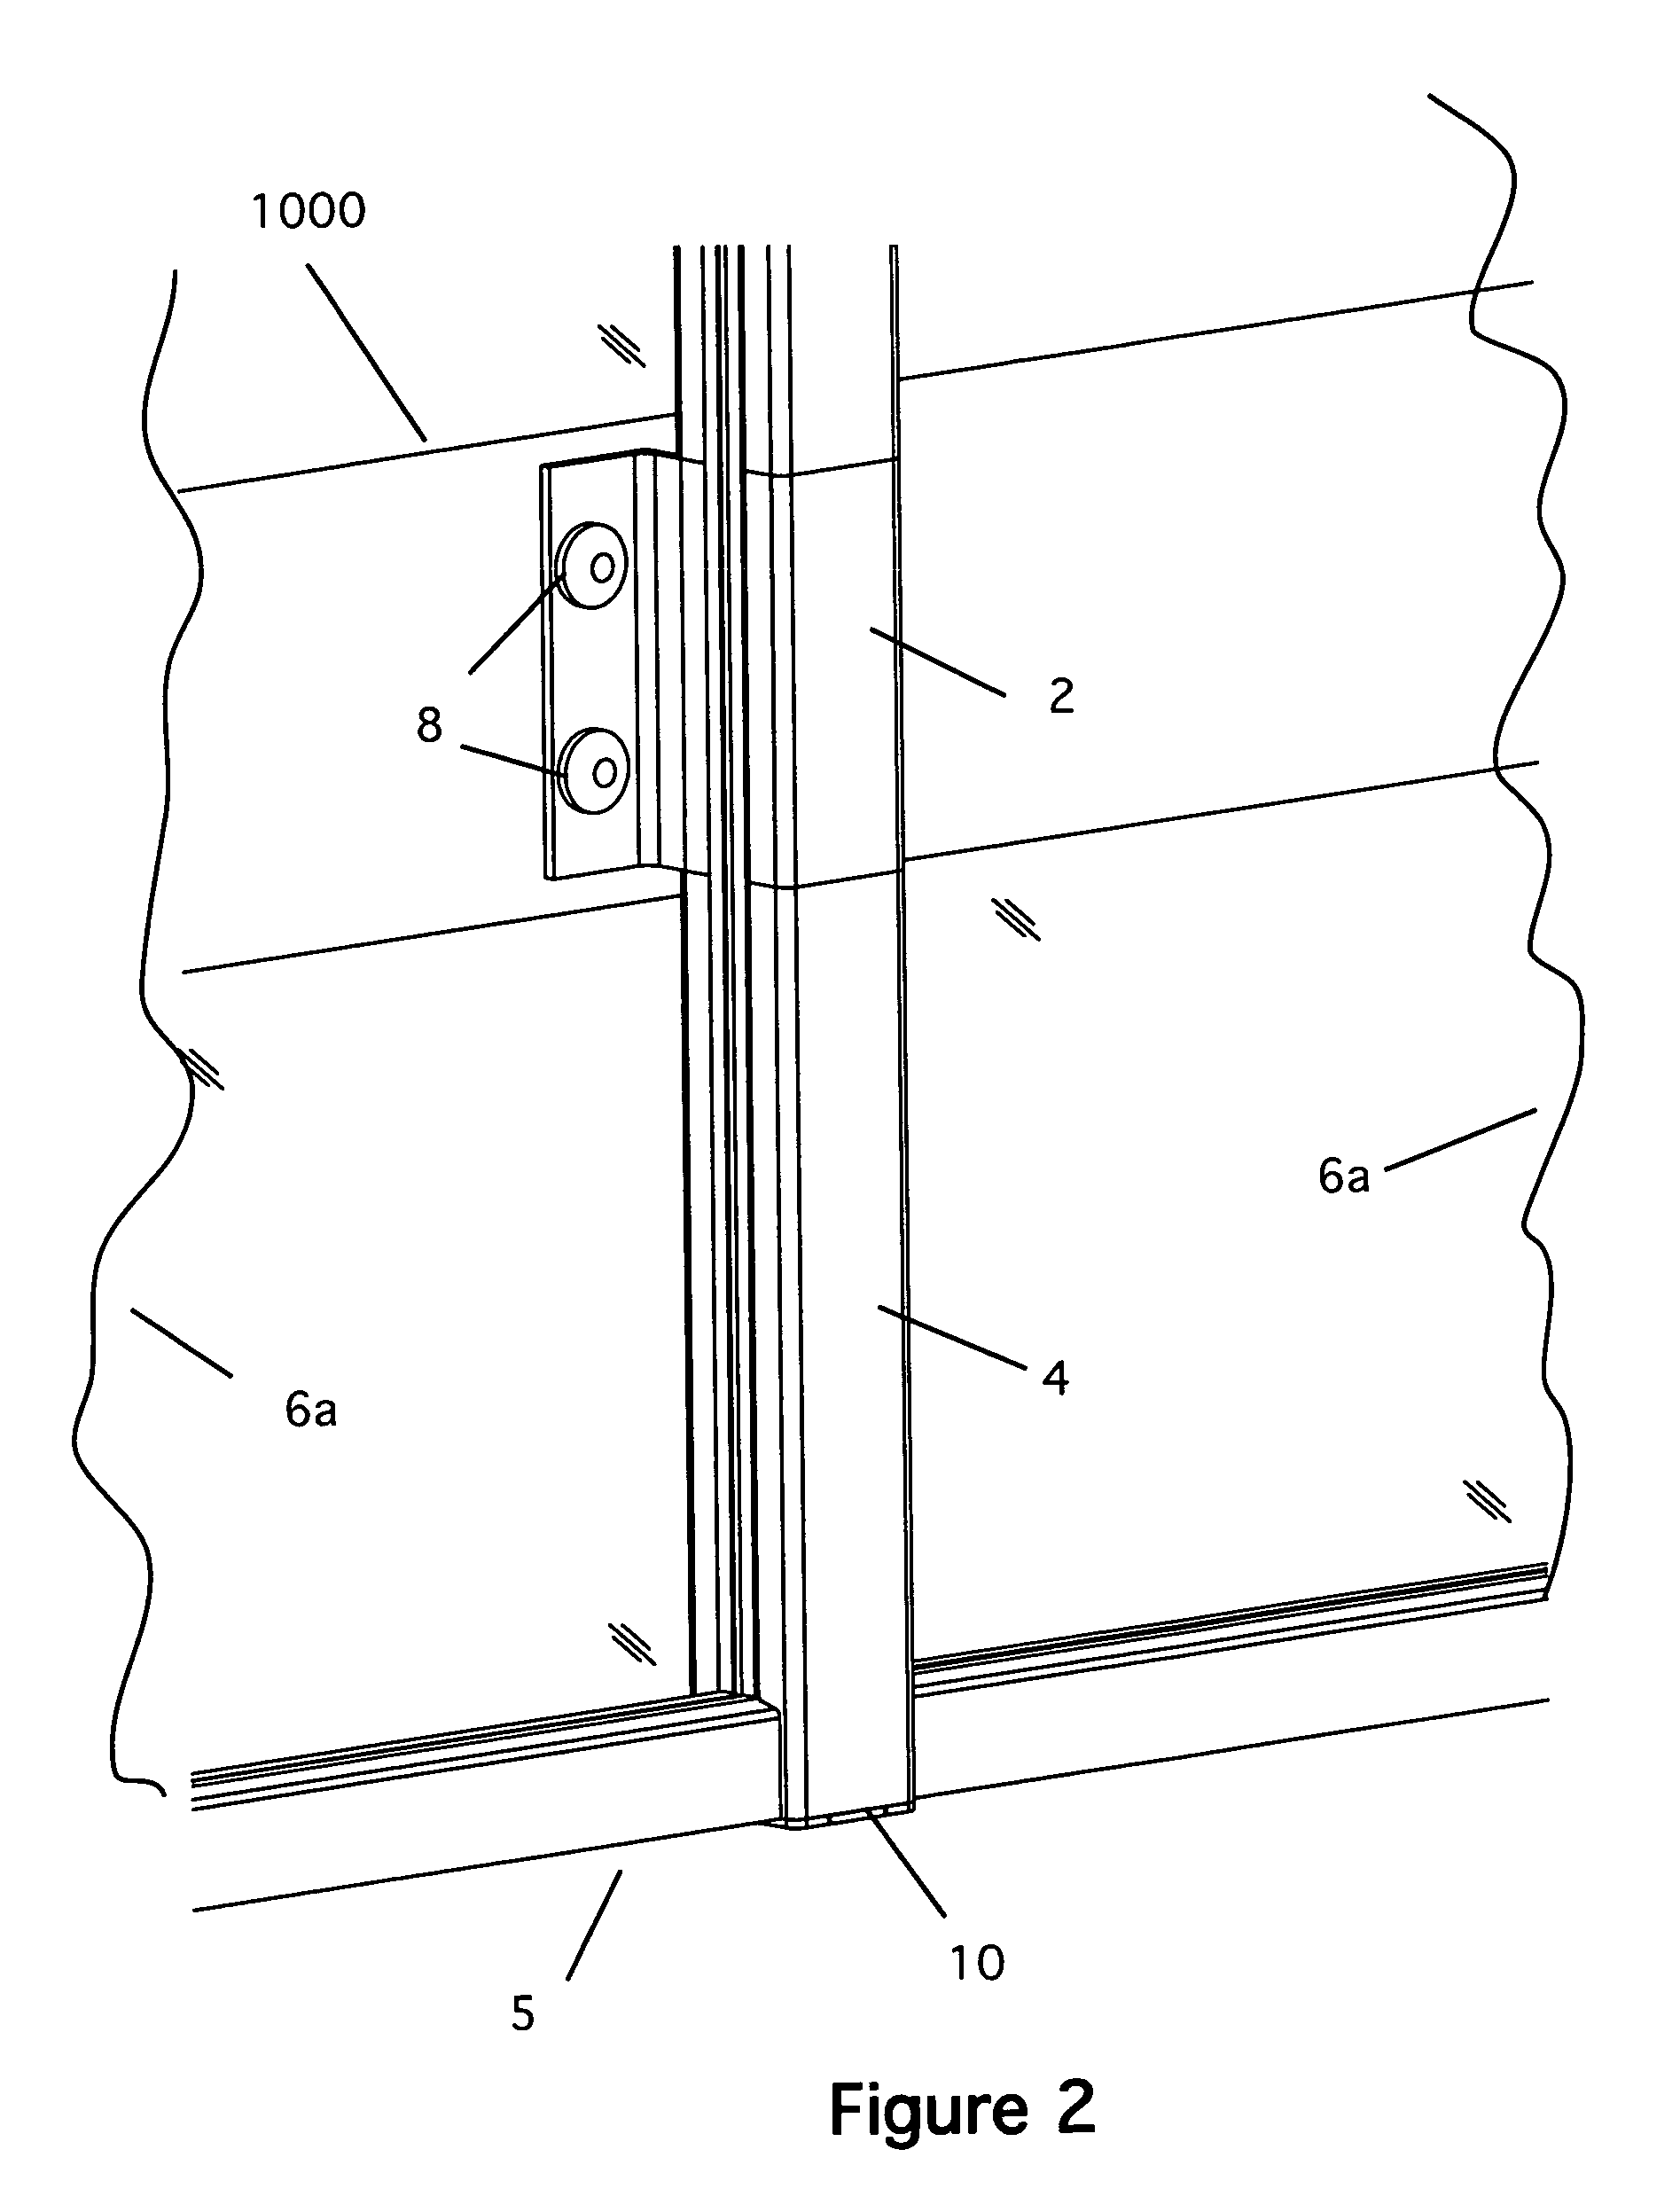 Fascia-mounted aluminum railing system